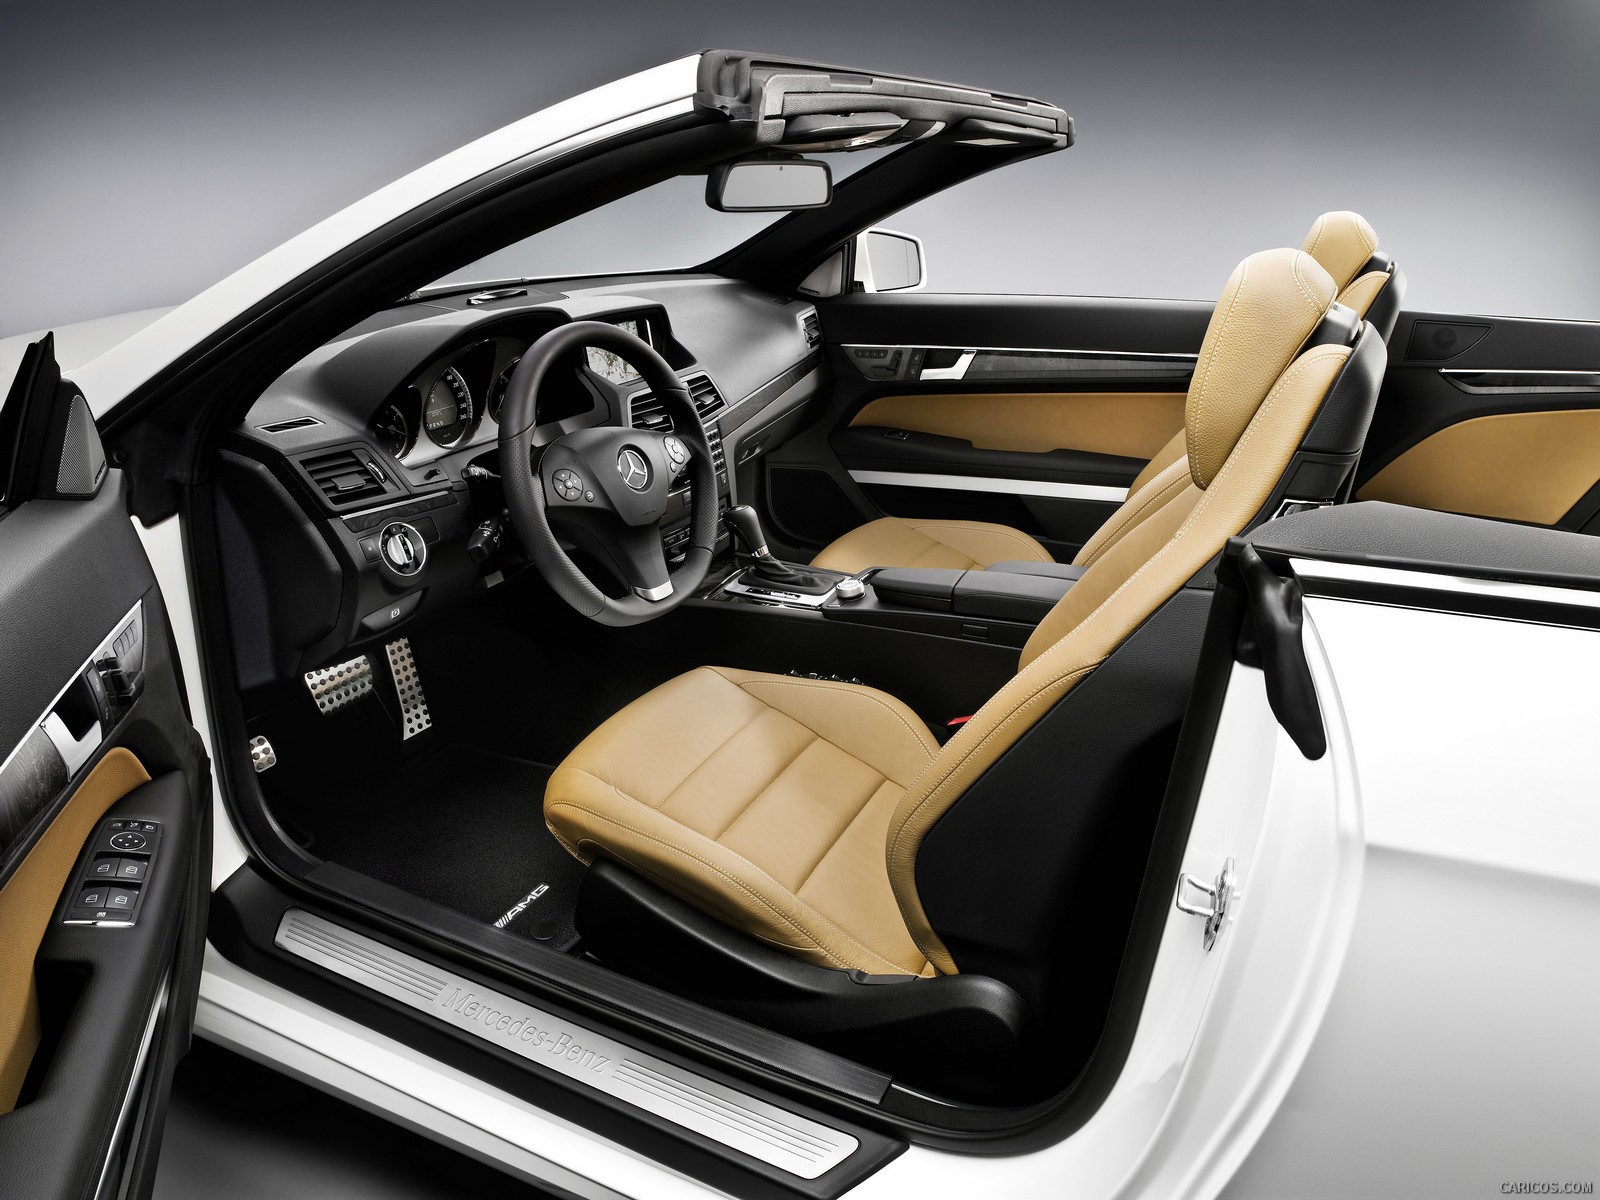 Mercedes-Benz E-Class Cabriolet  - Interior, #65 of 165